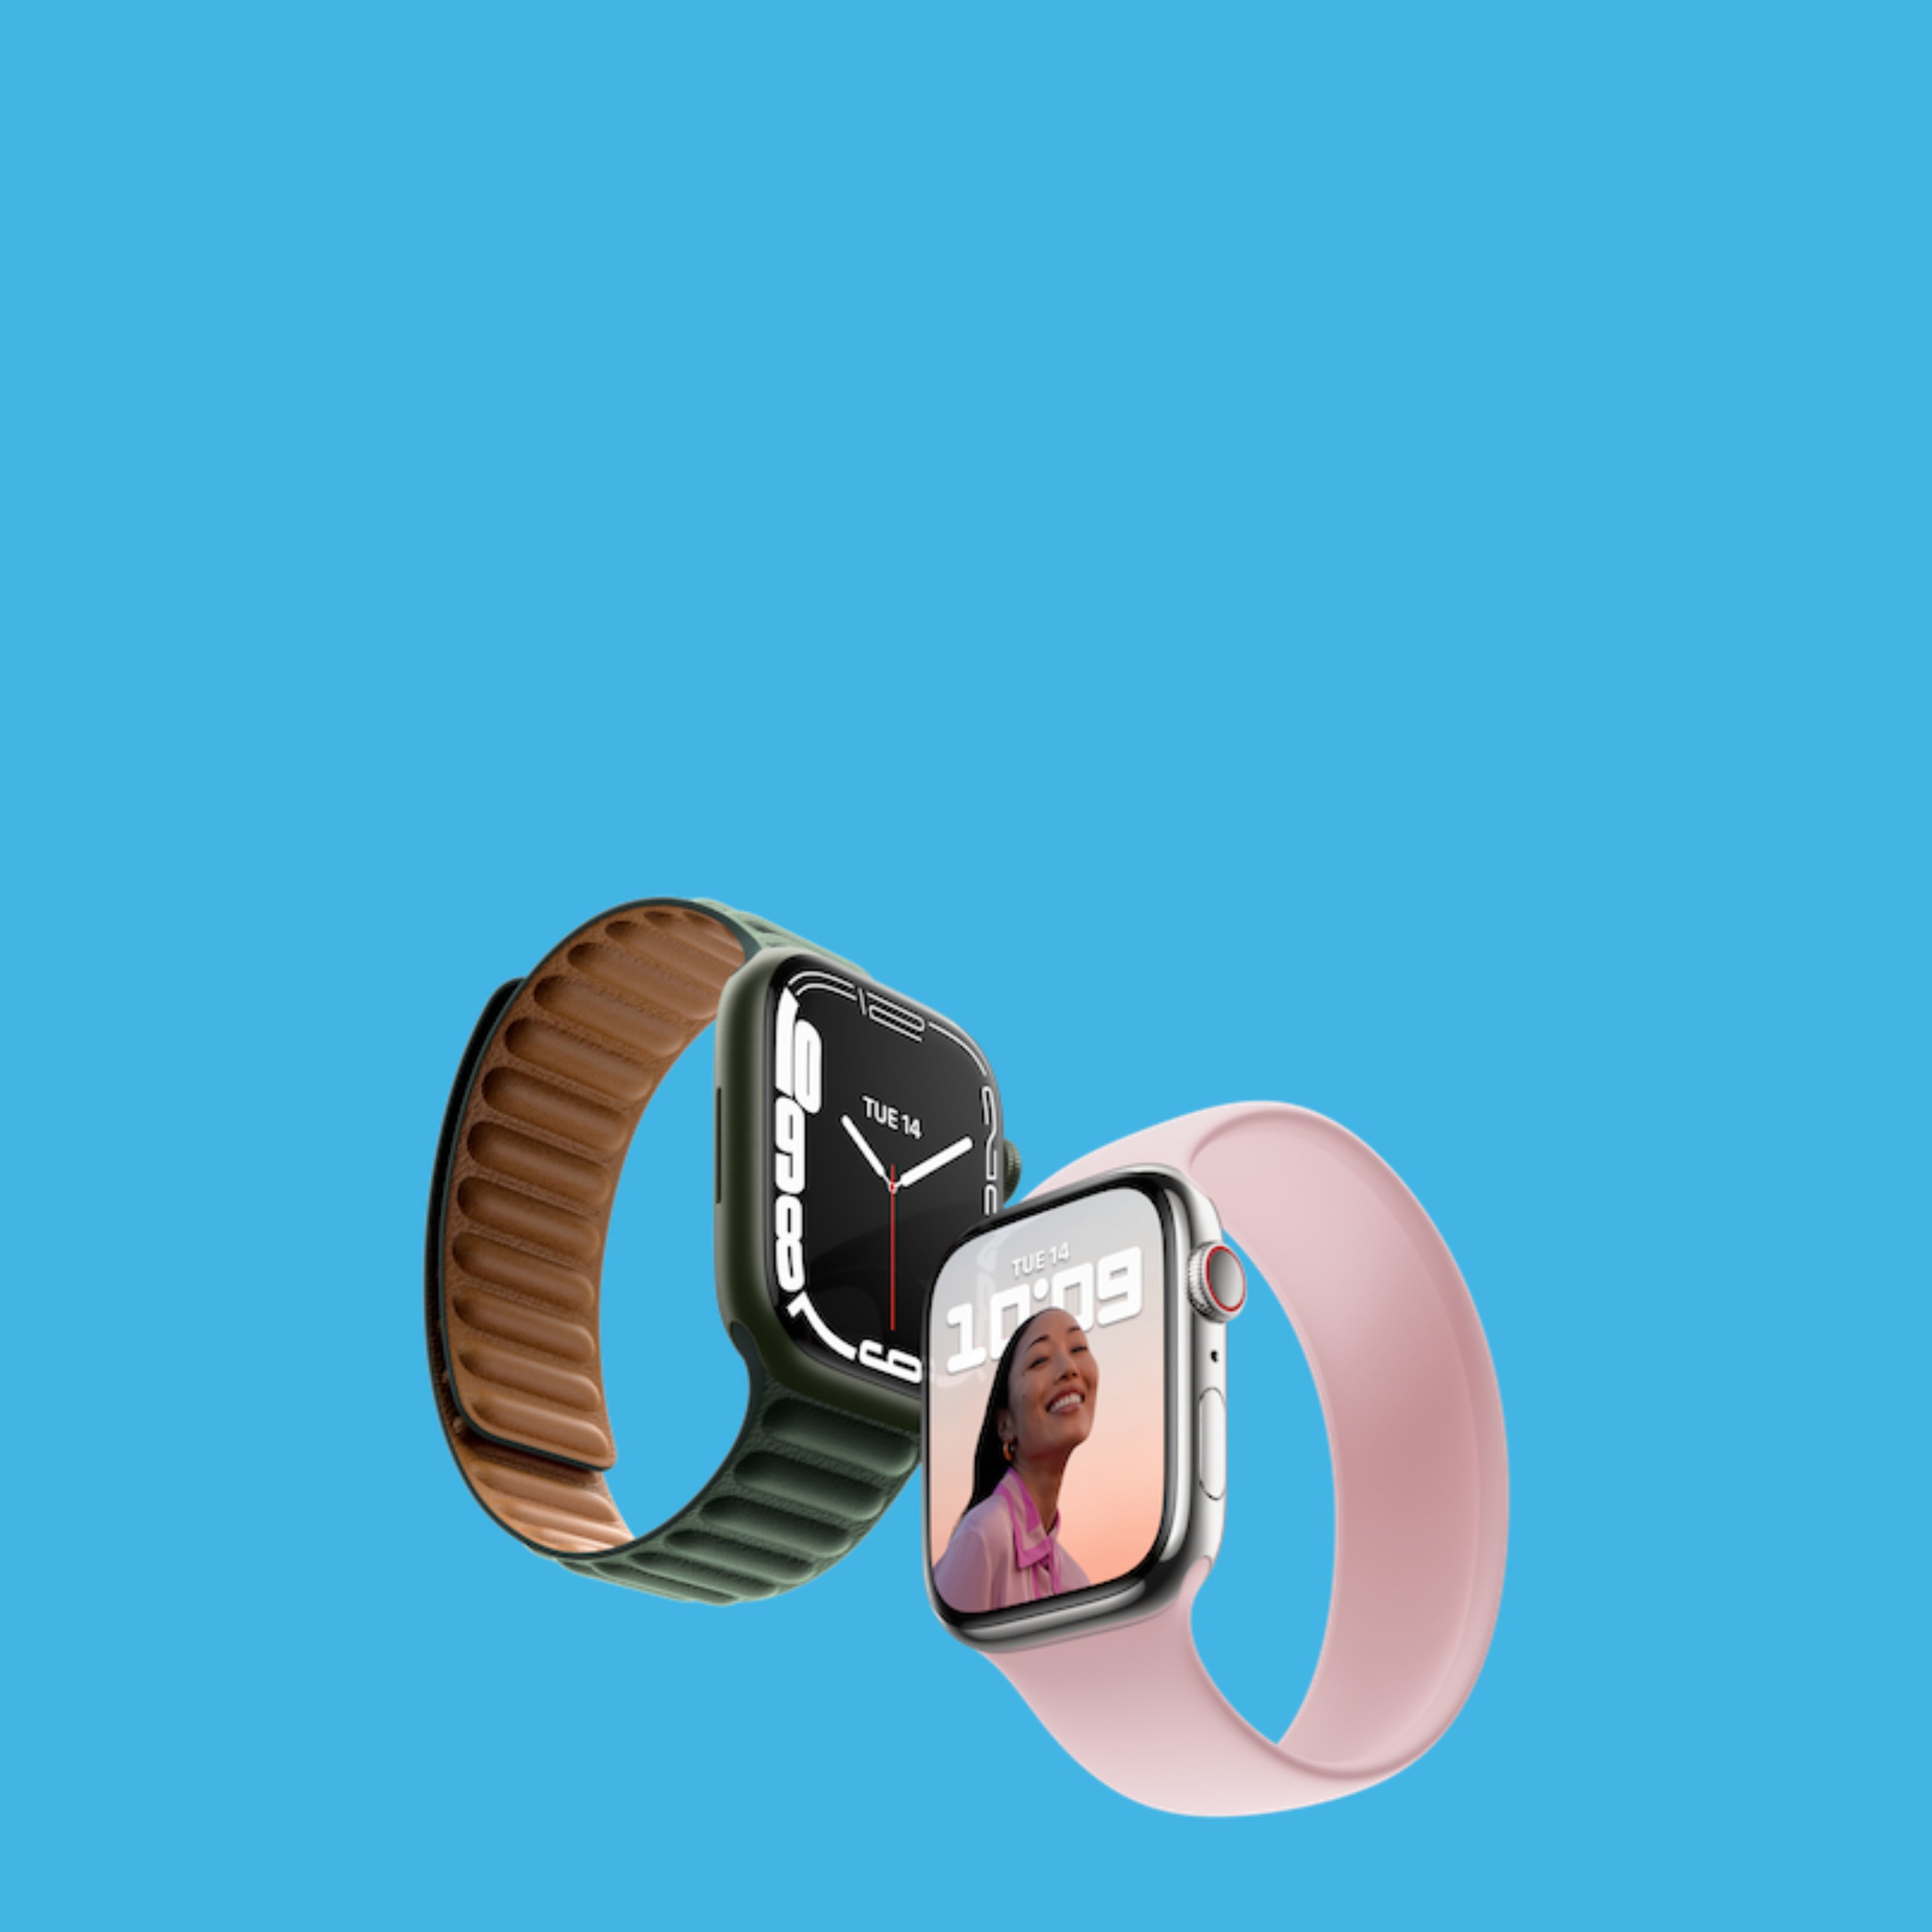 Nou Apple Watch, amb pantalla Retina més gran i càrrega ràpida